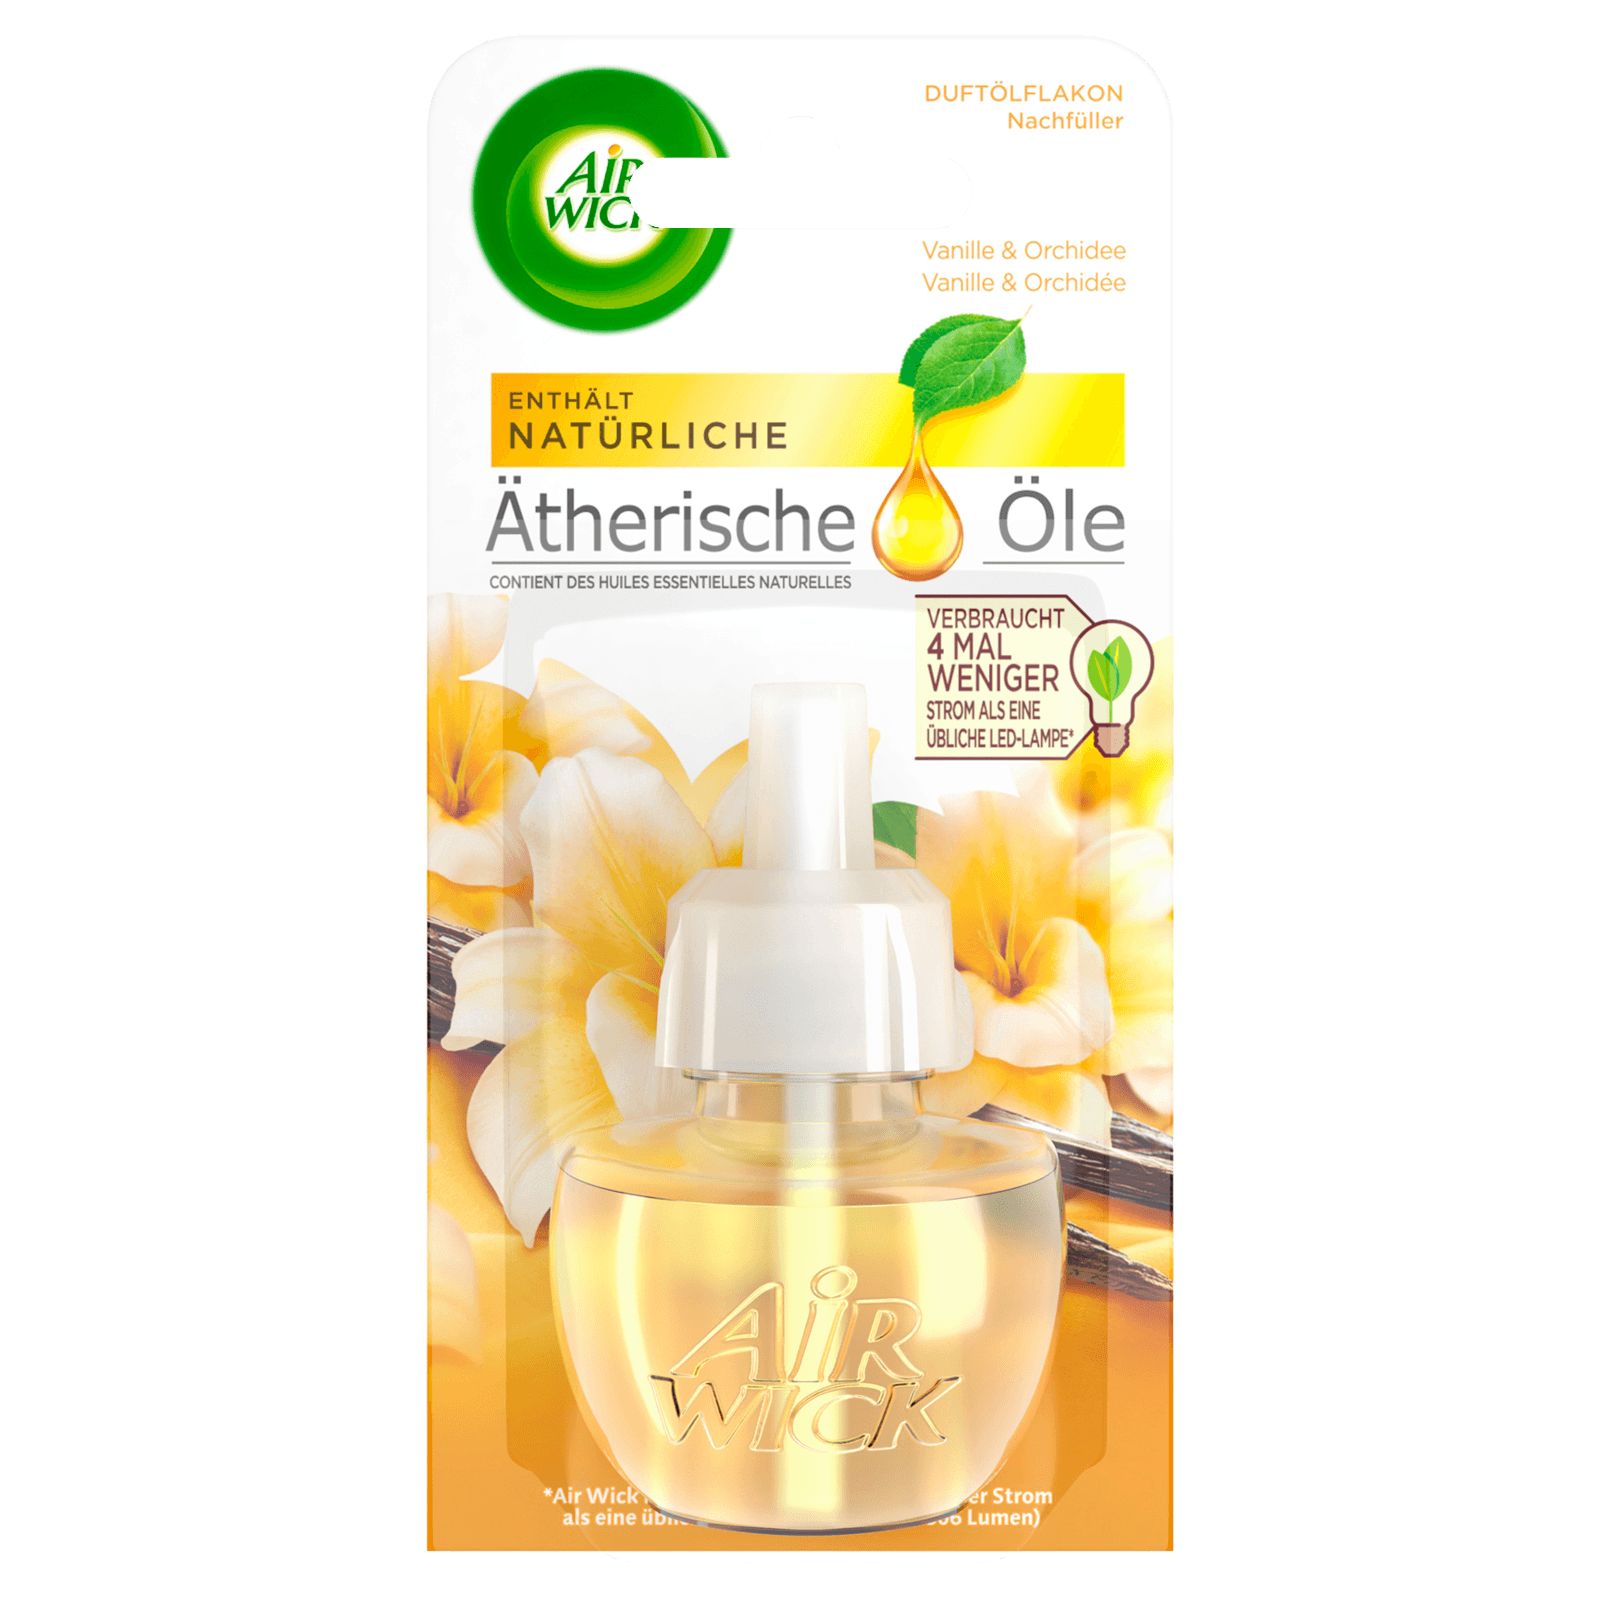 Air Wick Duftölflakon Nachfüller Ätherische Öle Vanille & Orchidee 19ml bei  REWE online bestellen!